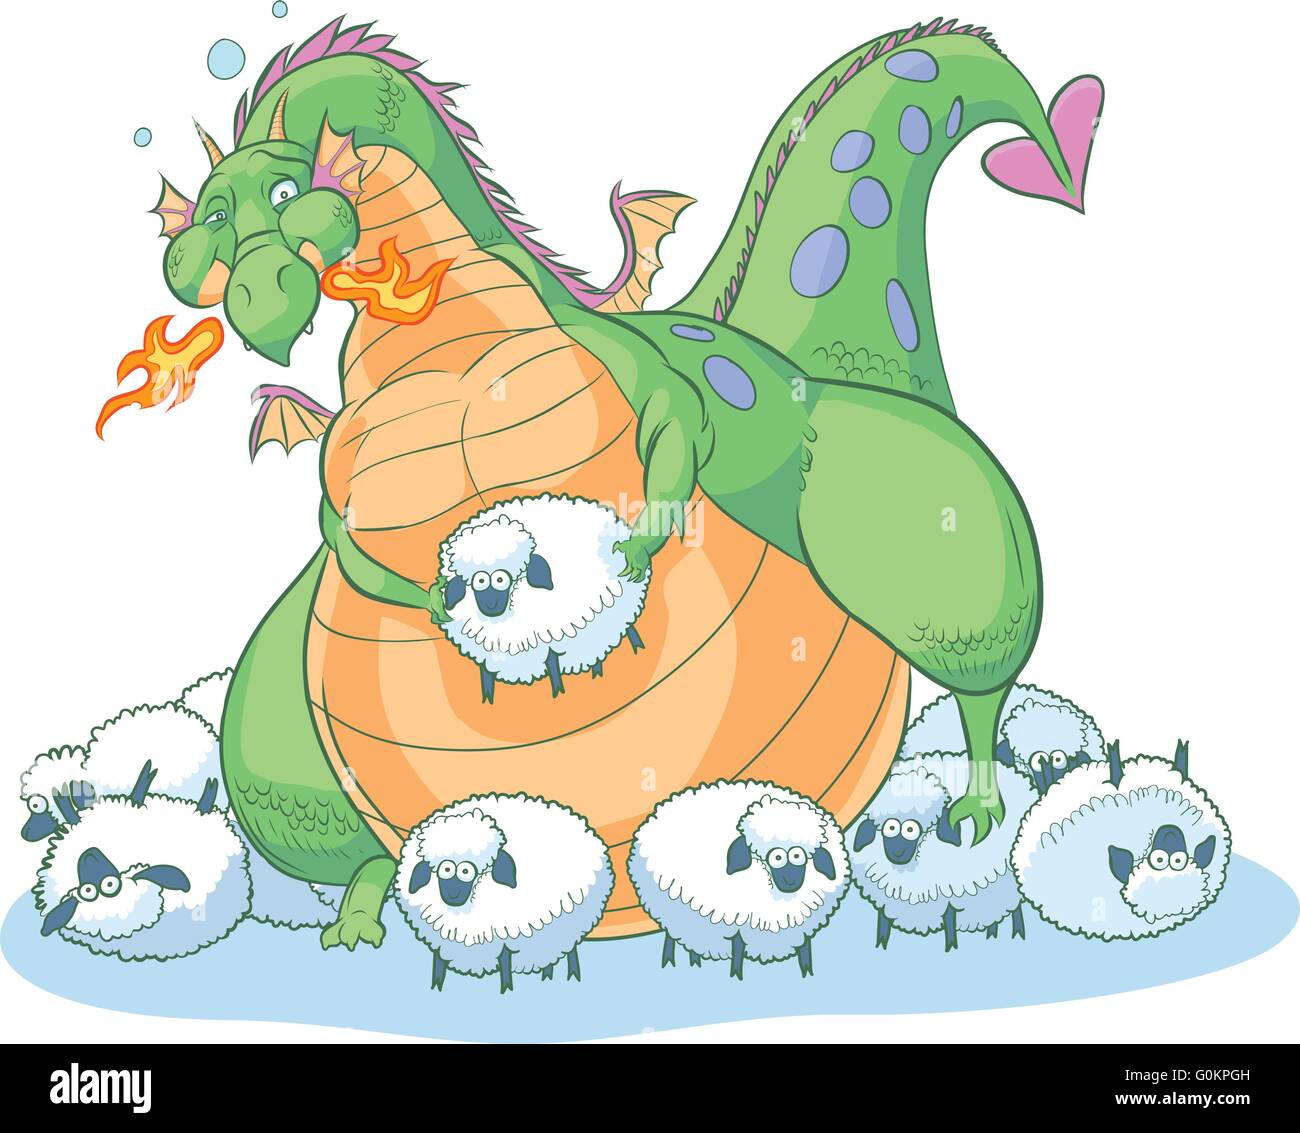 Un exceso de grasa dragón de dibujos animados descubre que puede tener demasiado de una buena cosa. Él está rodeado de ovejas desorientado. Ilustración del Vector